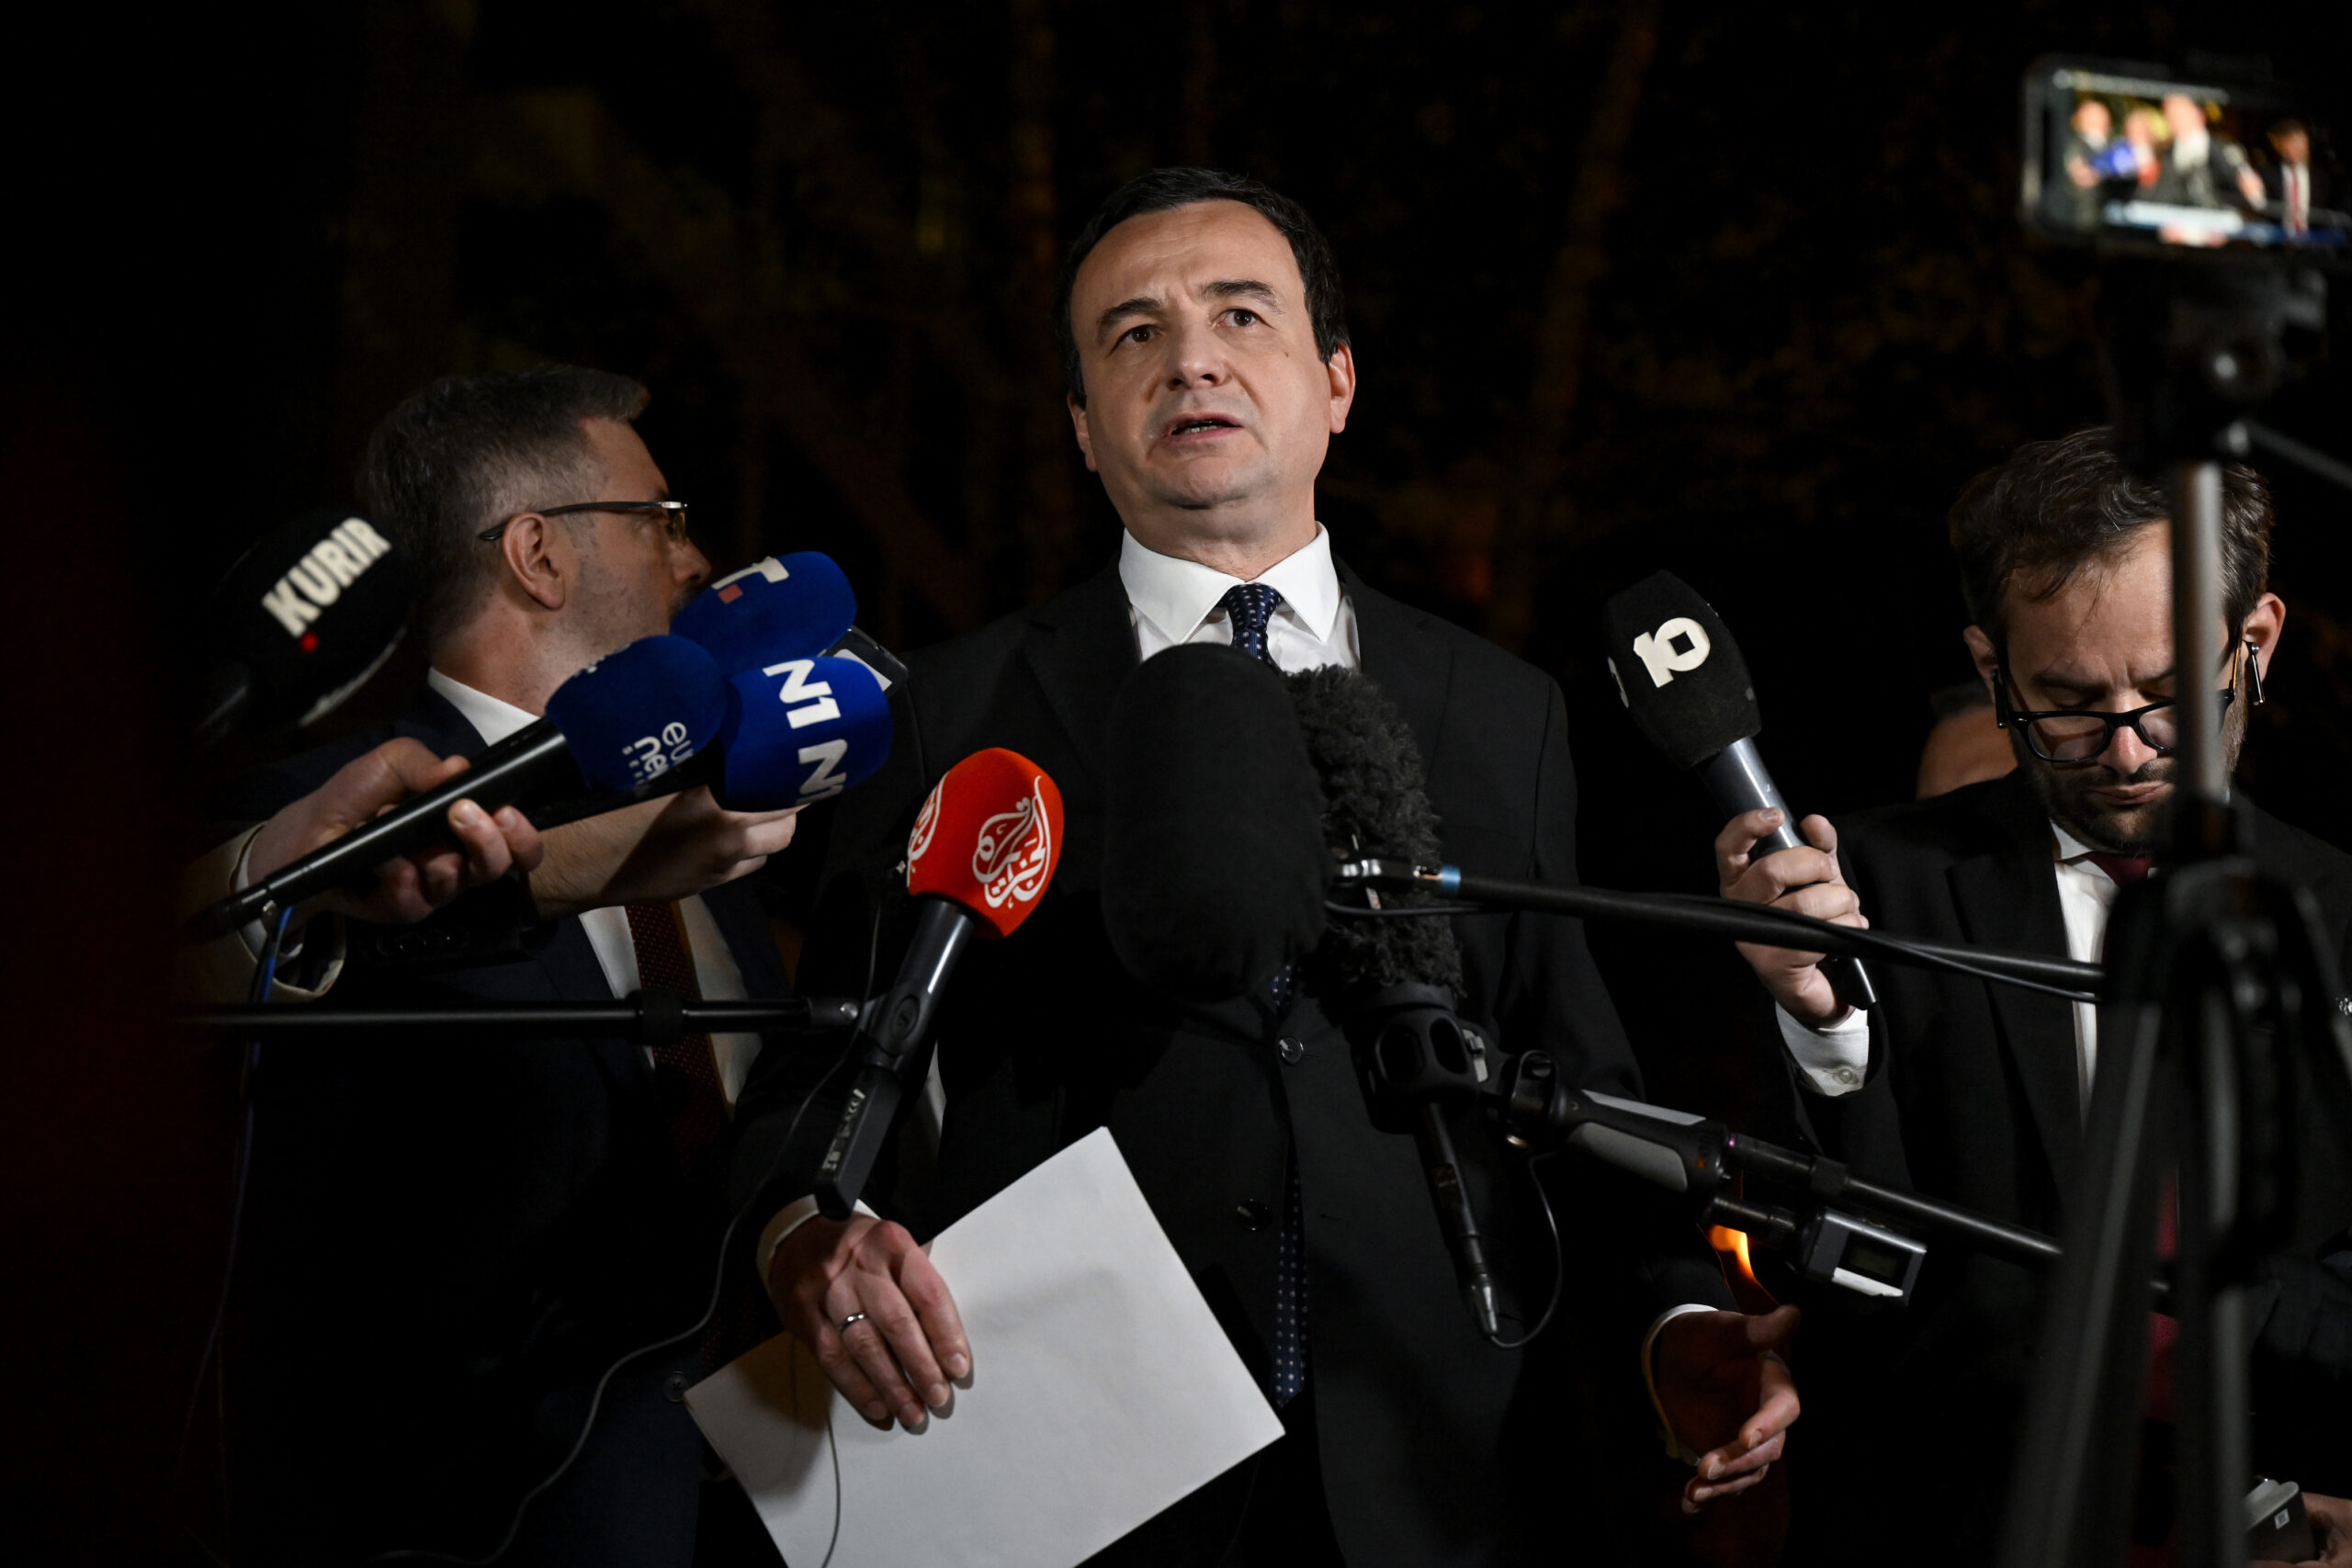 Σερβία: Ο πρωθυπουργός του Κοσόβου «δεν υποχωρεί» στην απόφασή του να εγκαταστήσει Αλβανούς δημάρχους σε σερβικές πόλεις